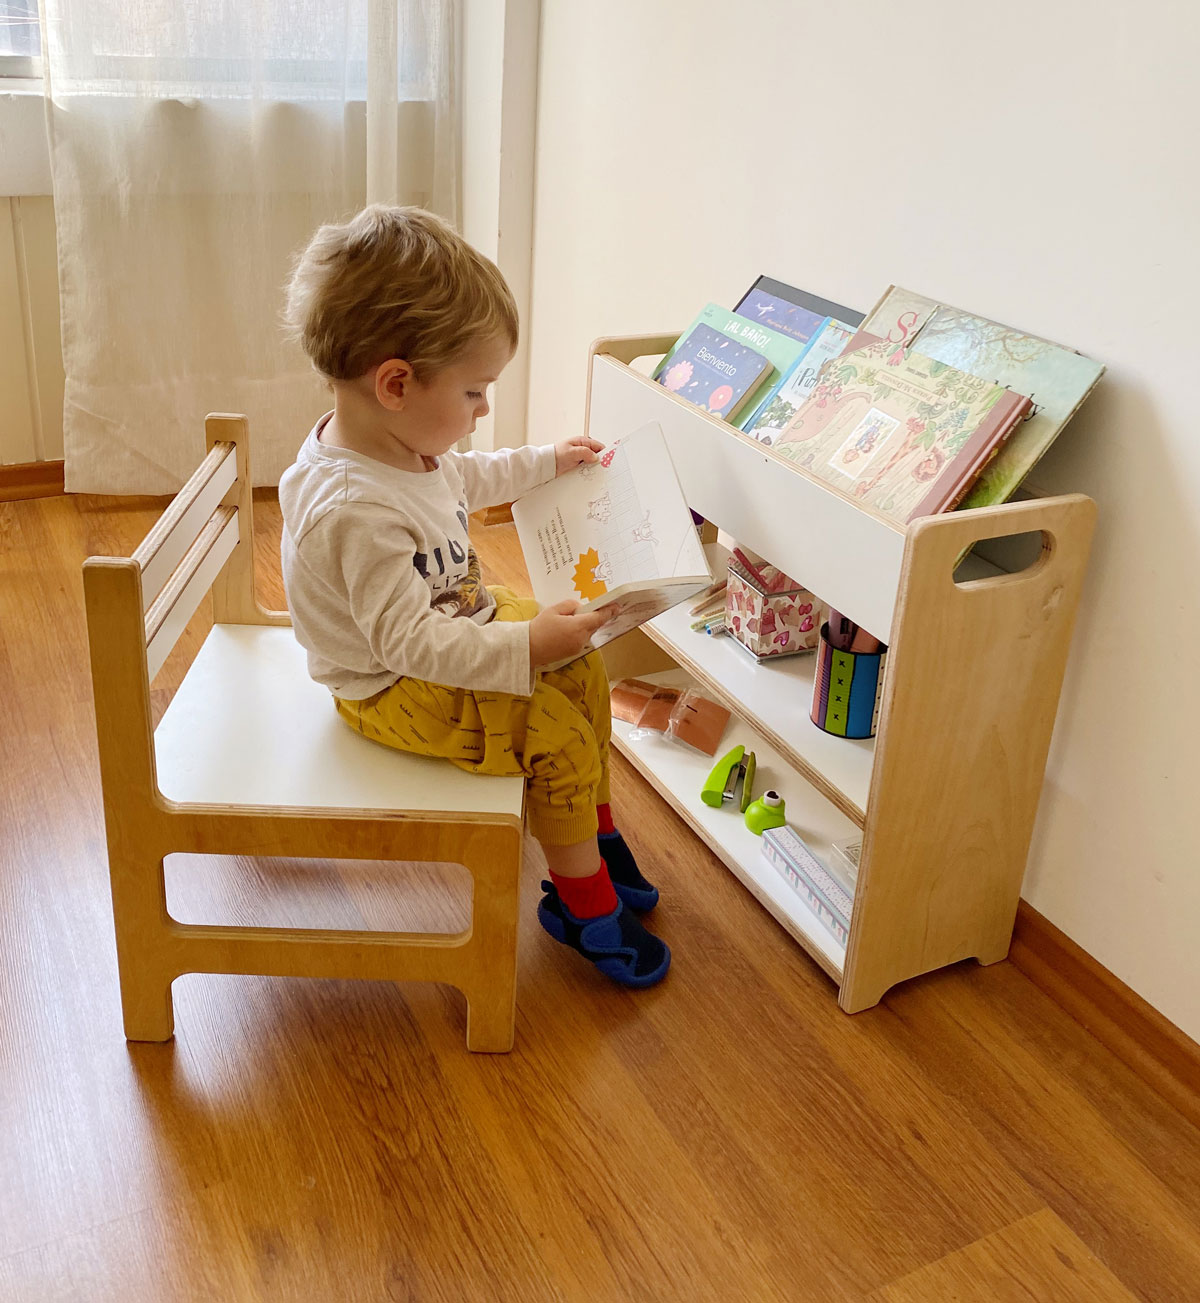 Mesa – IRQICHAY - Muebles inspirados en Pedagogía Montessori